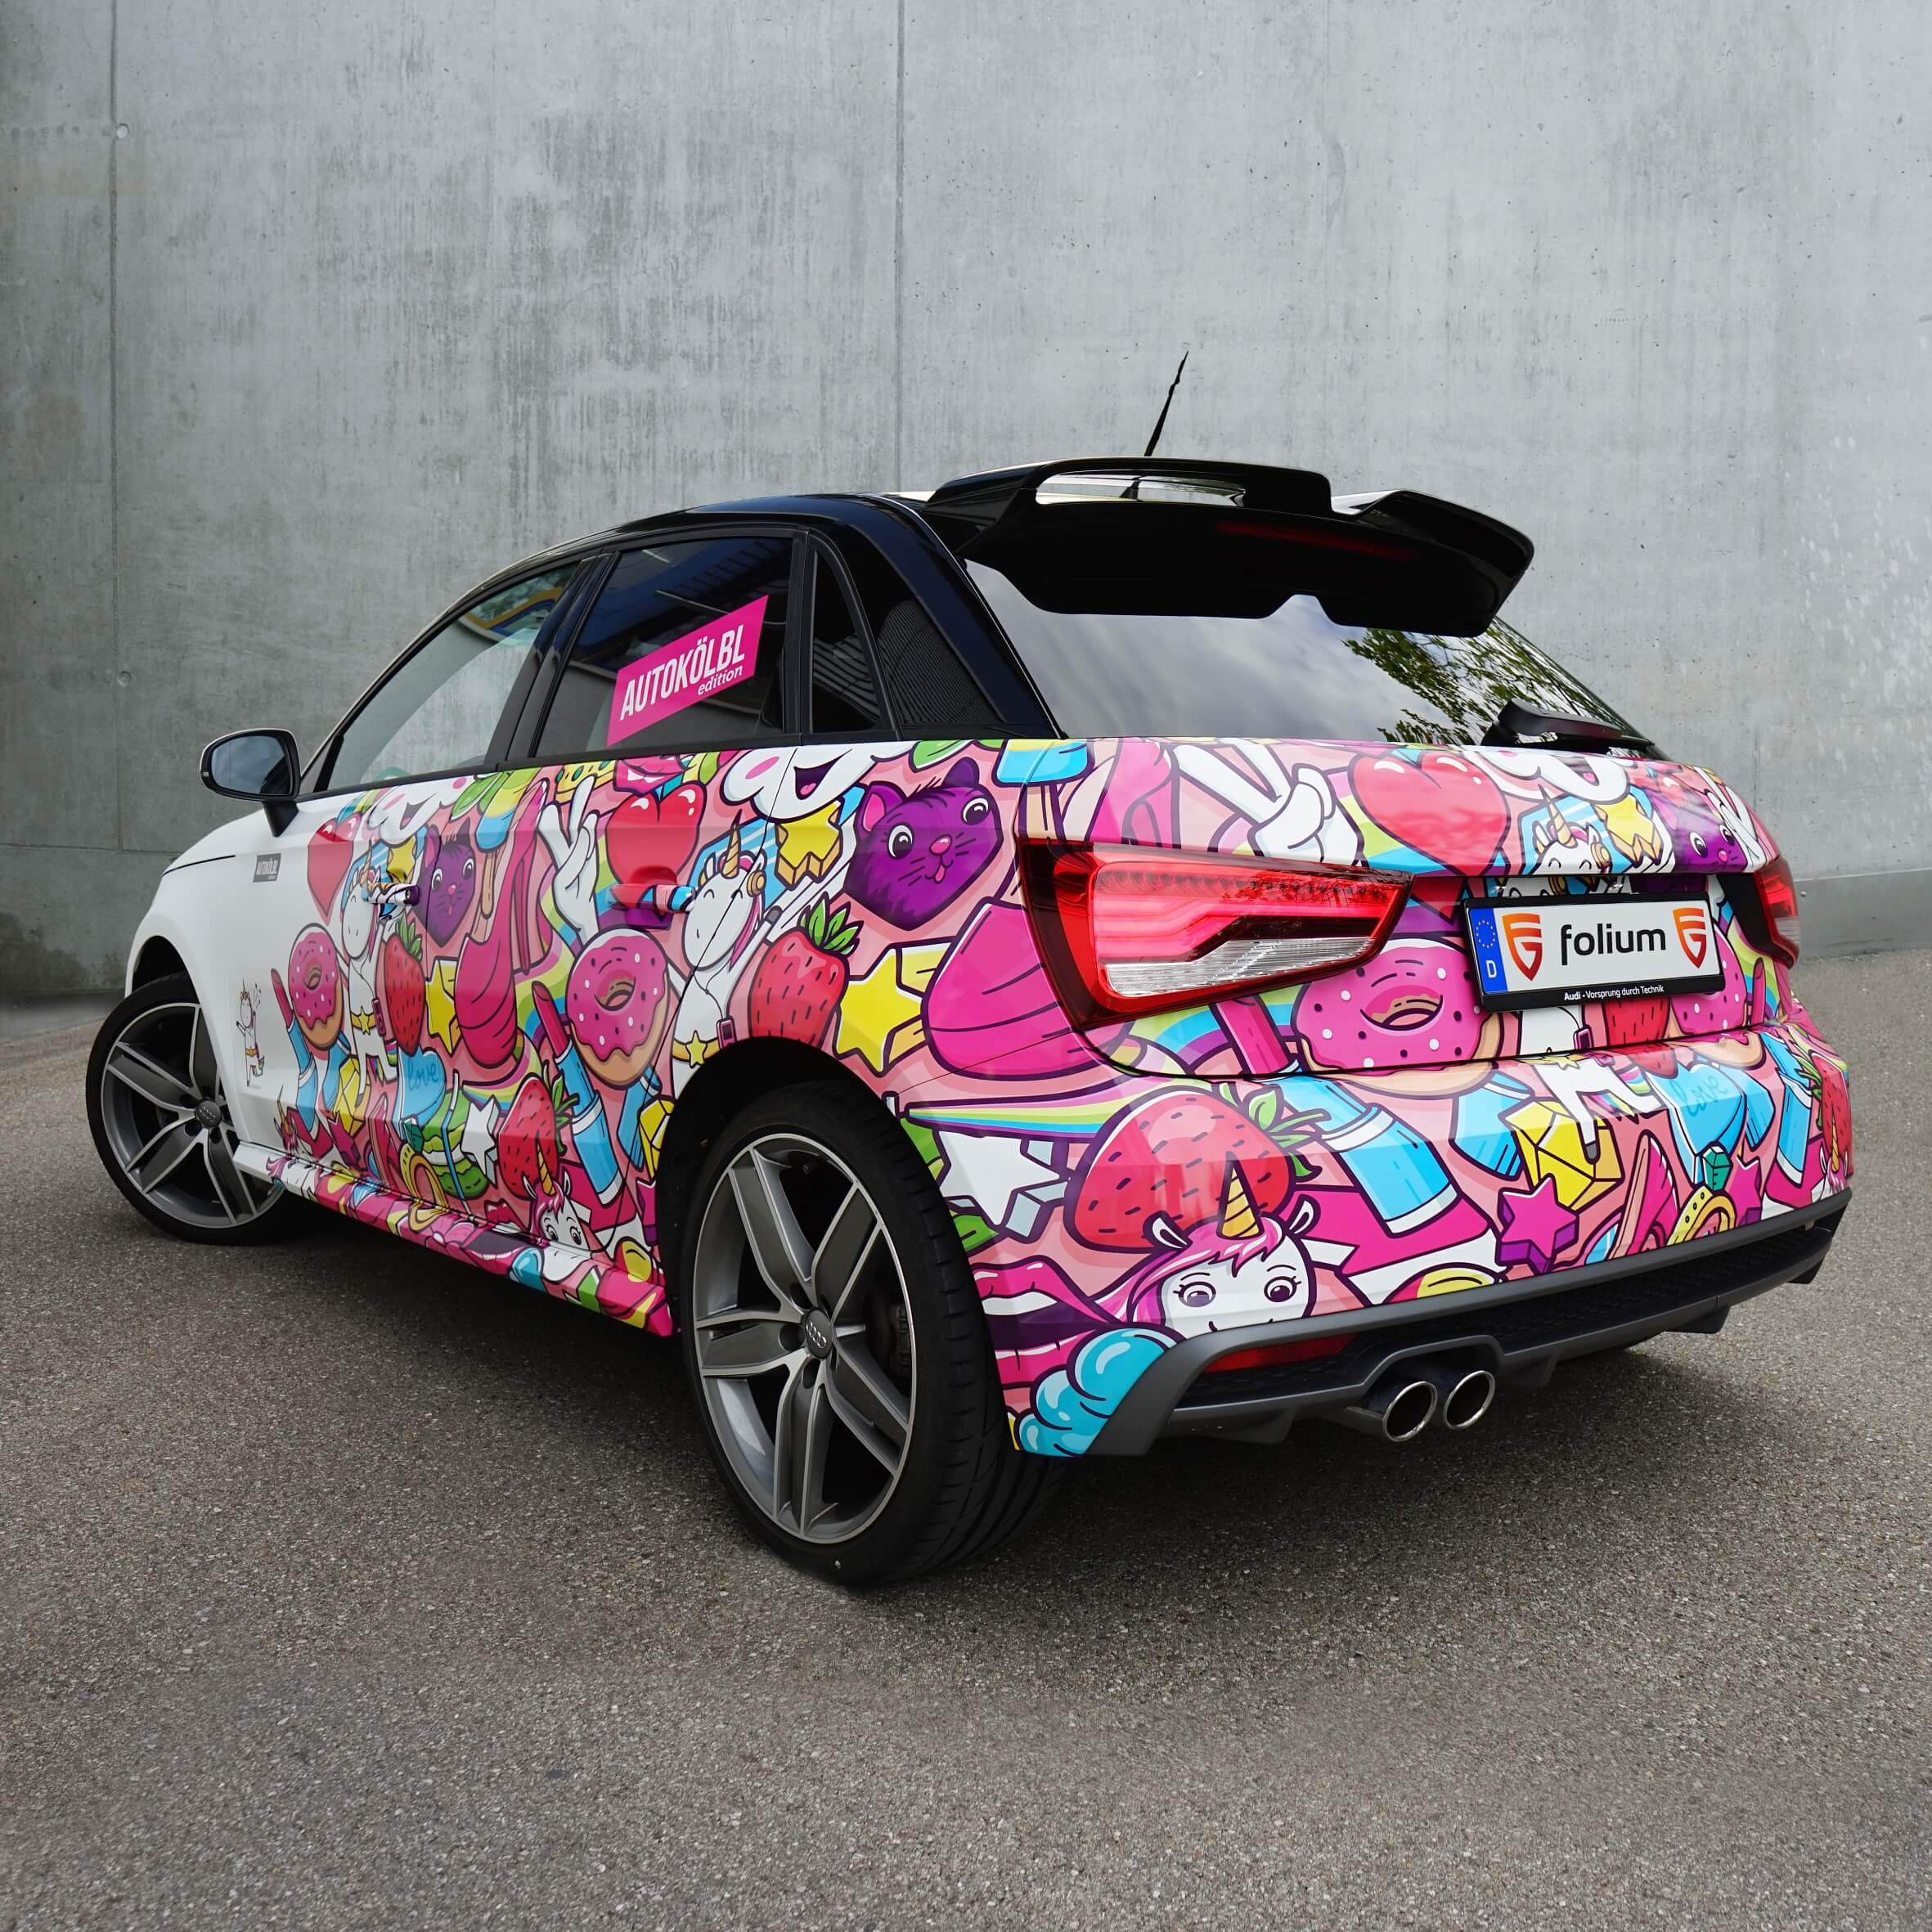 ᑕ❶ᑐ Car Wrapping München ᐅ Car Wrap by Folium